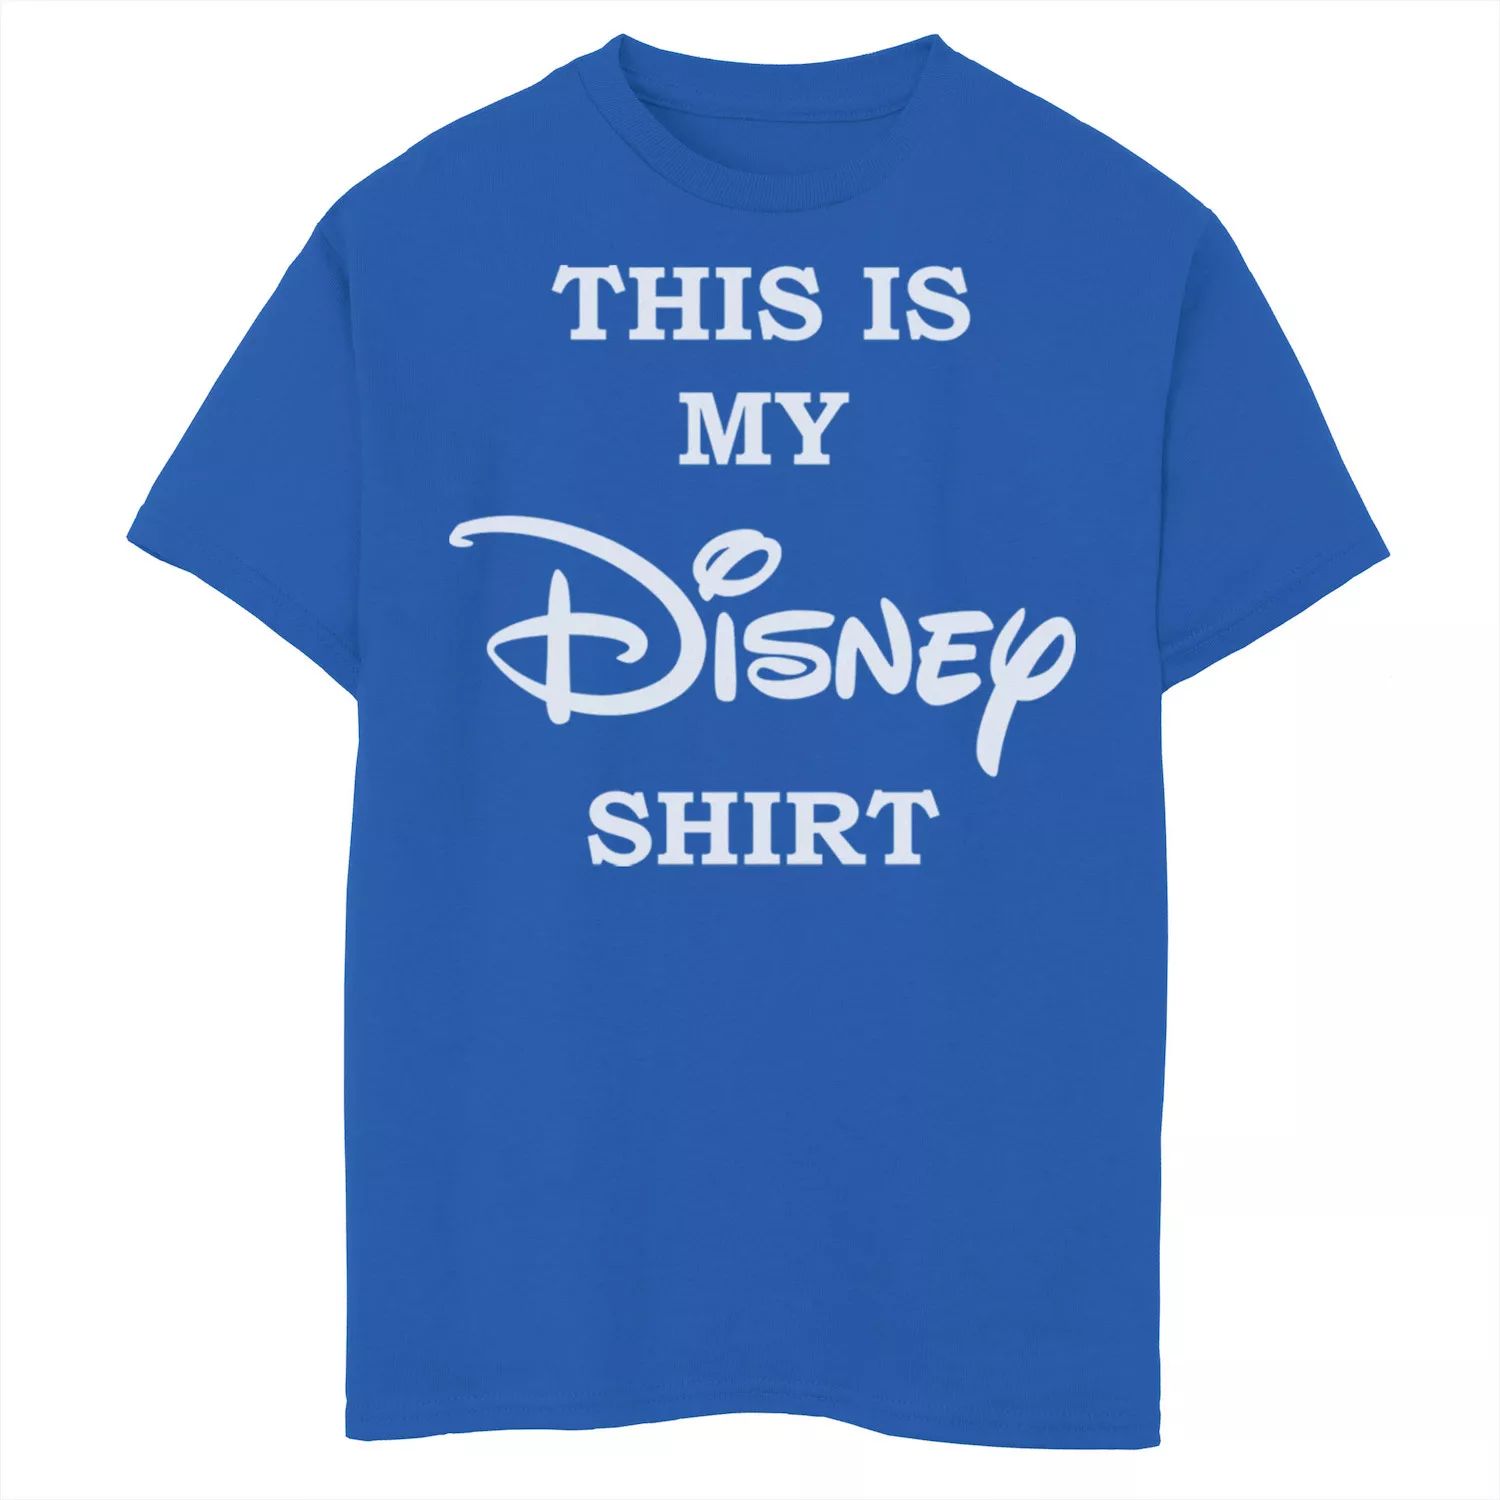 Футболка с логотипом Disney на груди для мальчиков 8–20 лет с графическим рисунком This Is My Disney Shirt Disney базовая футболка disney с логотипом disney для мальчиков 8–20 лет и графическим рисунком disney